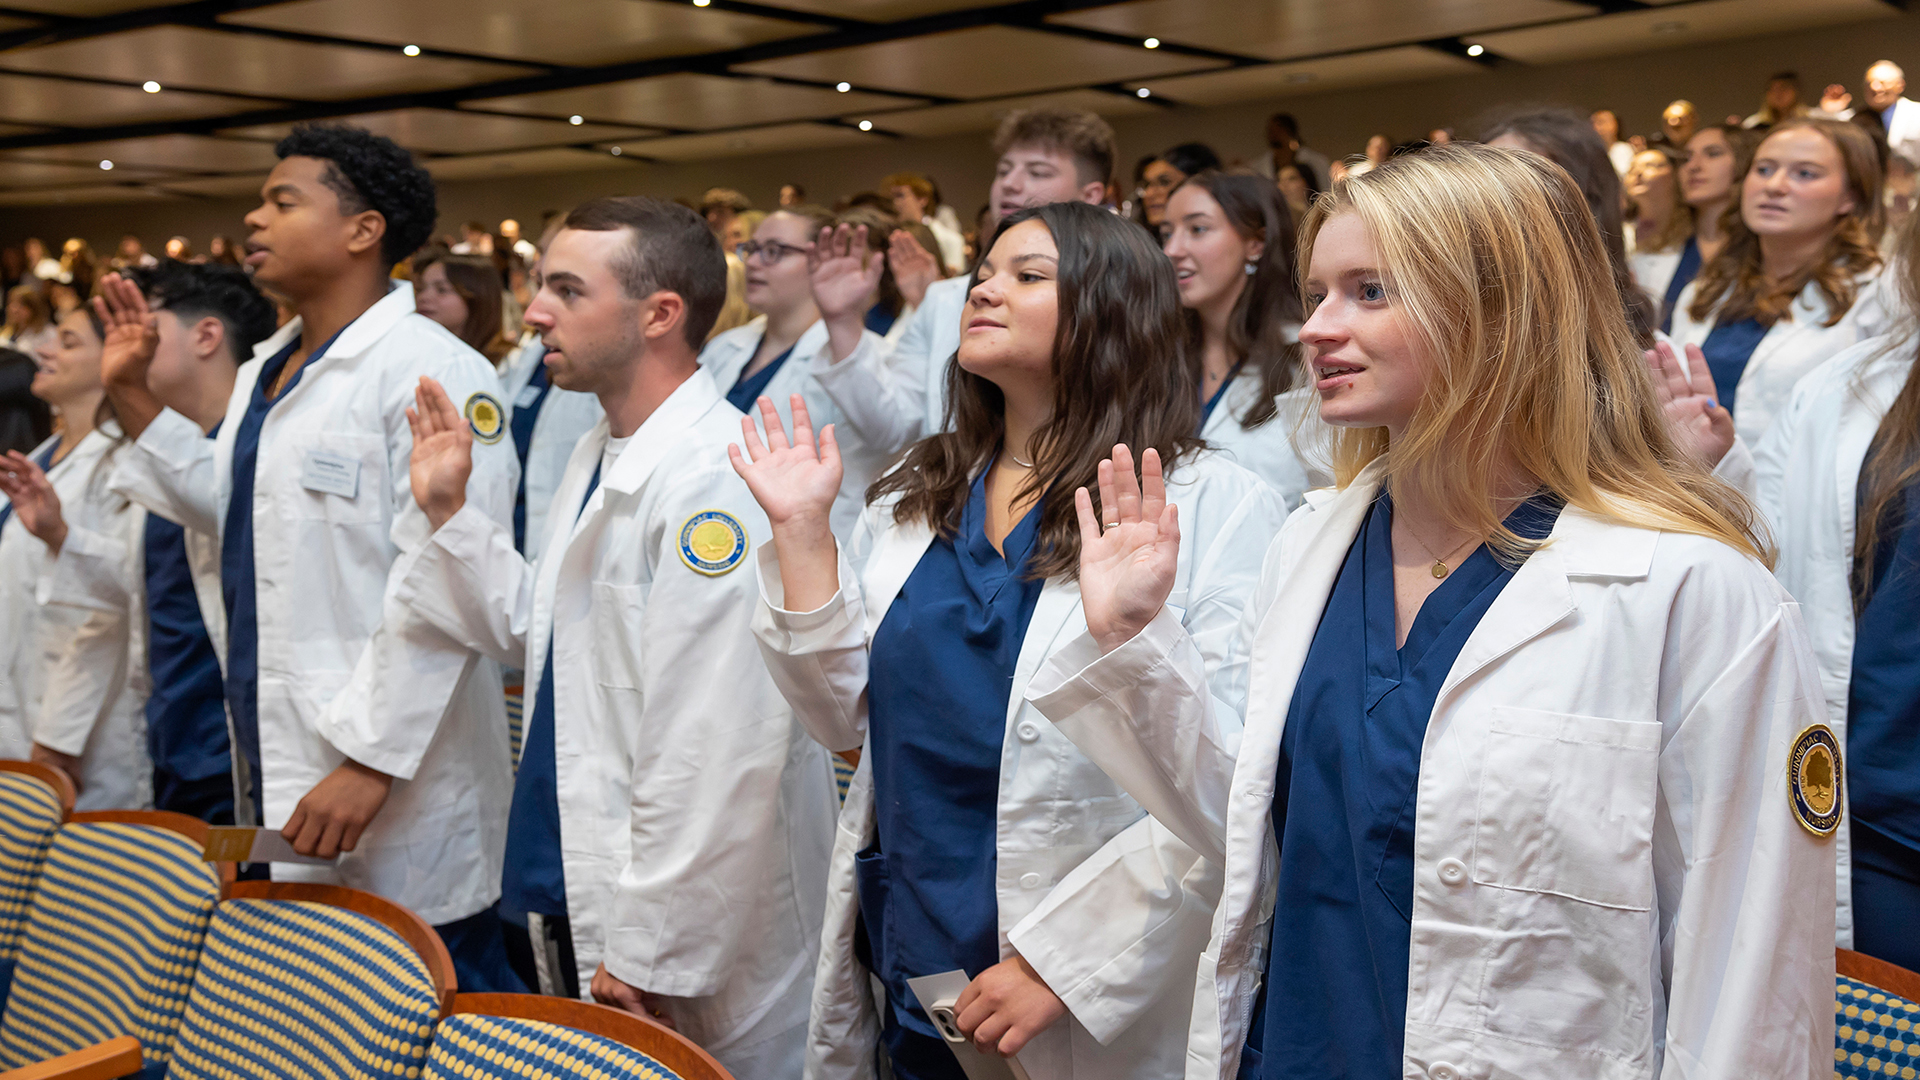 Quinnipiac University School of Nursing hosts inaugural White Coat Ceremony